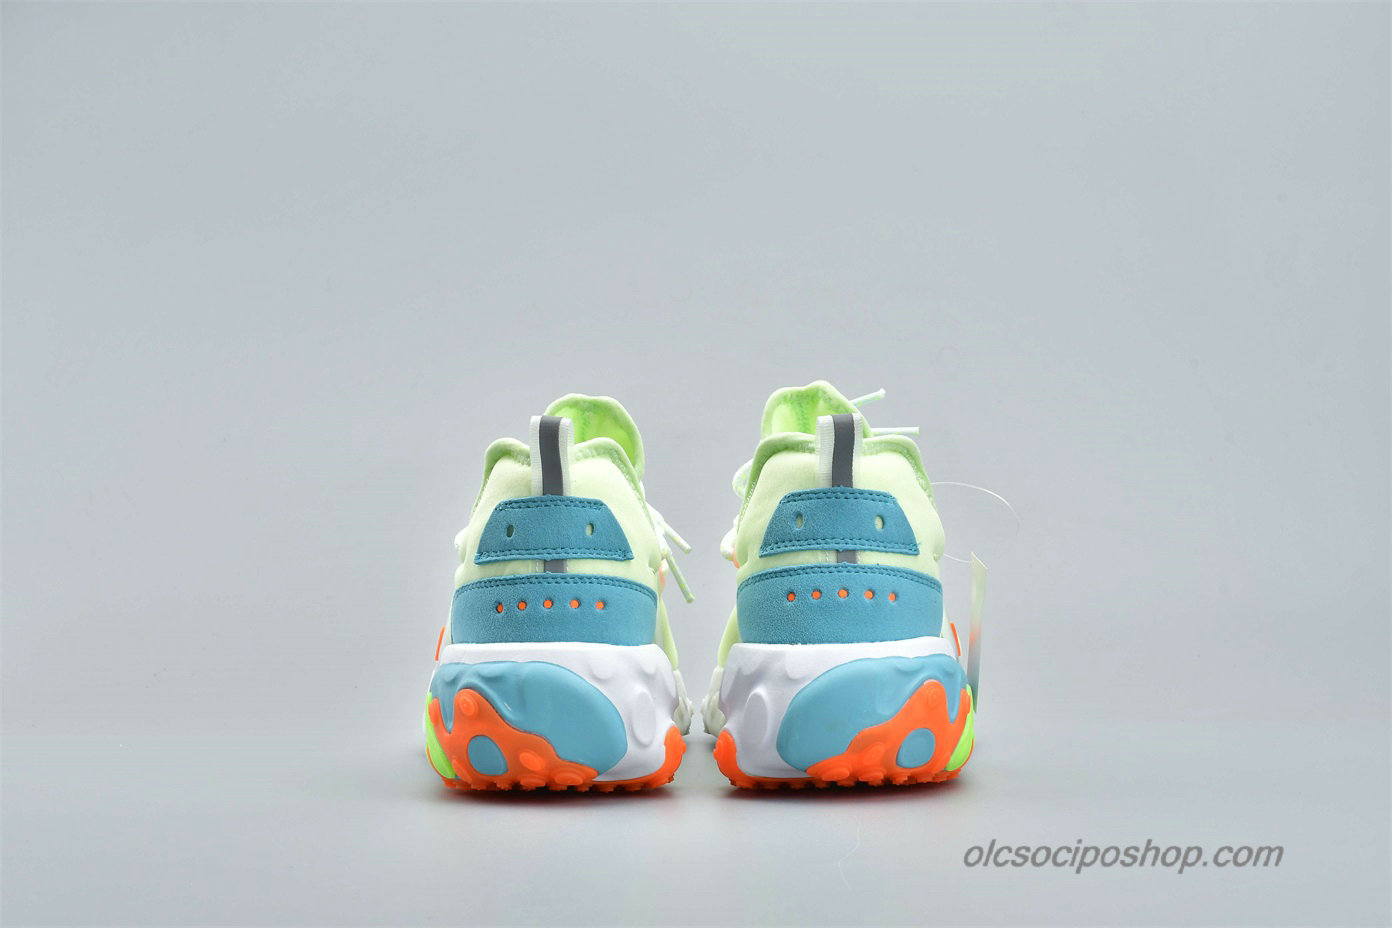 Nike Presto React Zöld/Világoskék/Narancs Cipők (AV2605-700) - Kattintásra bezárul